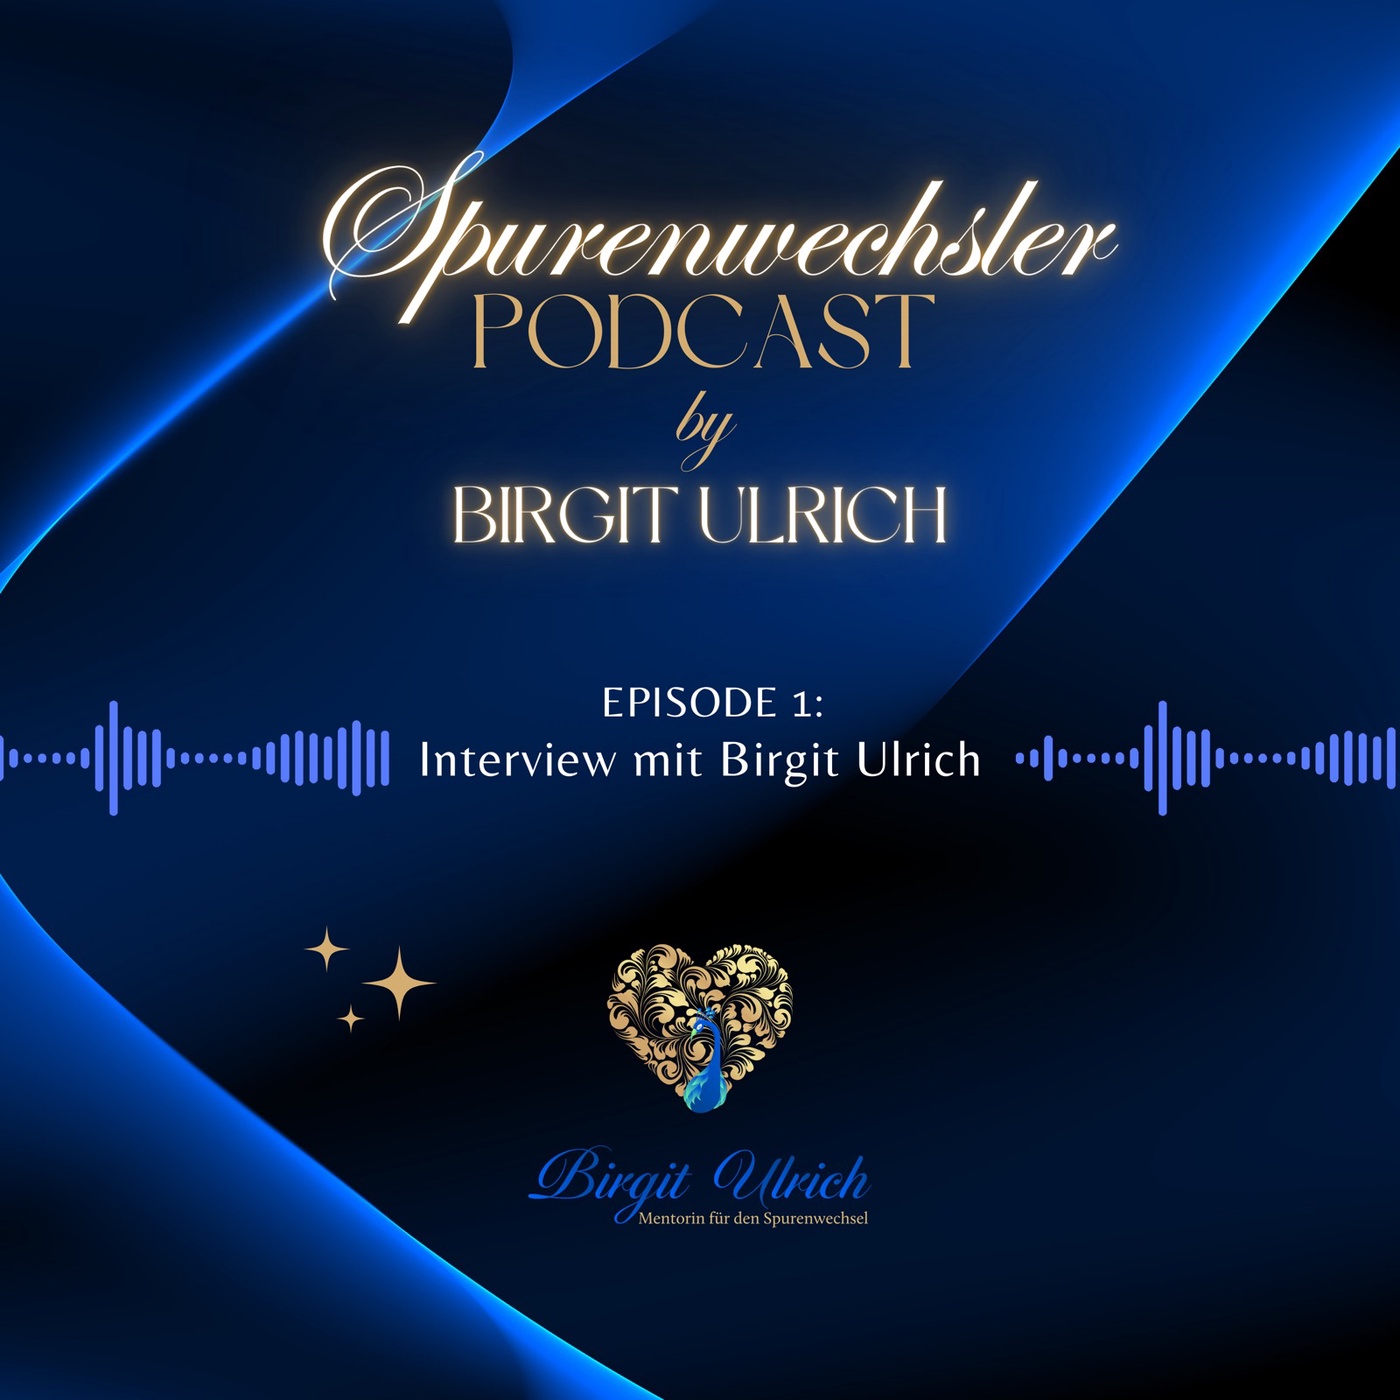 Spurenwechsler Podcast by Birgit Ulrich